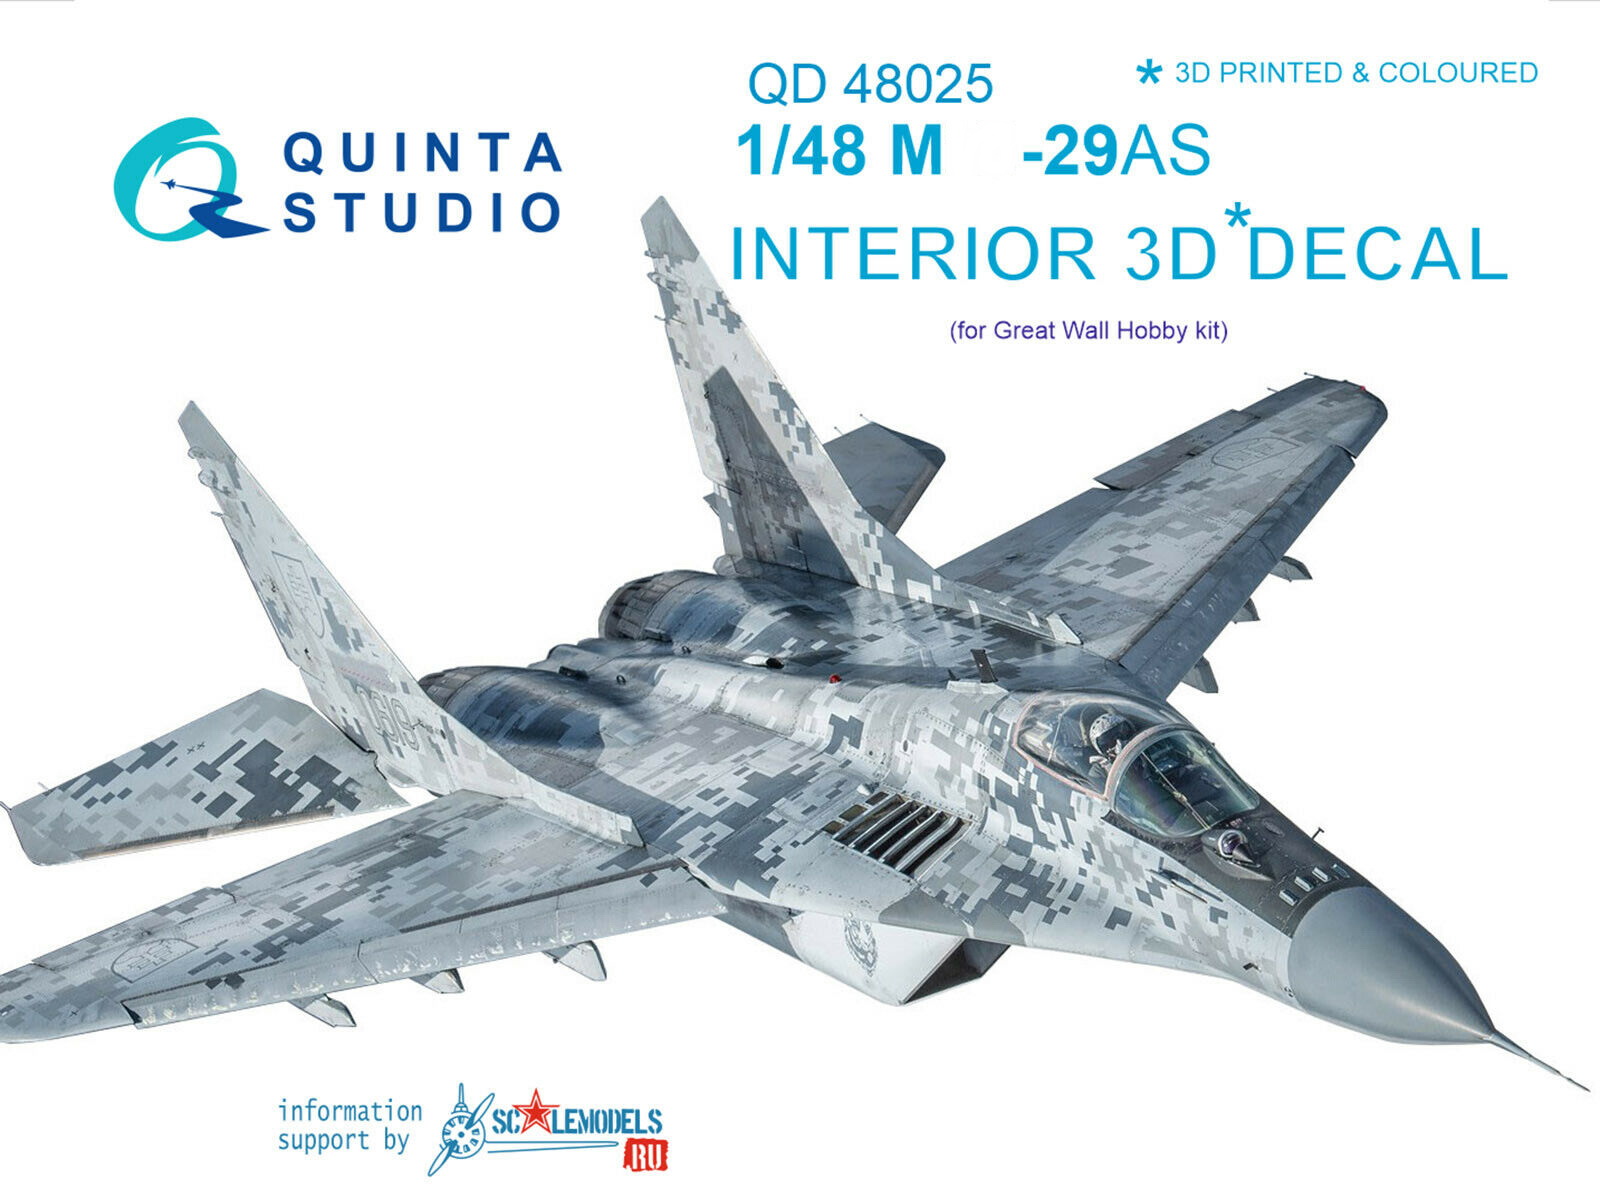 QD48025  декали  3D Декаль интерьера кабины М-29AS (ВВС СЛОВАКИИ) (для модели GWH)  (1:48)